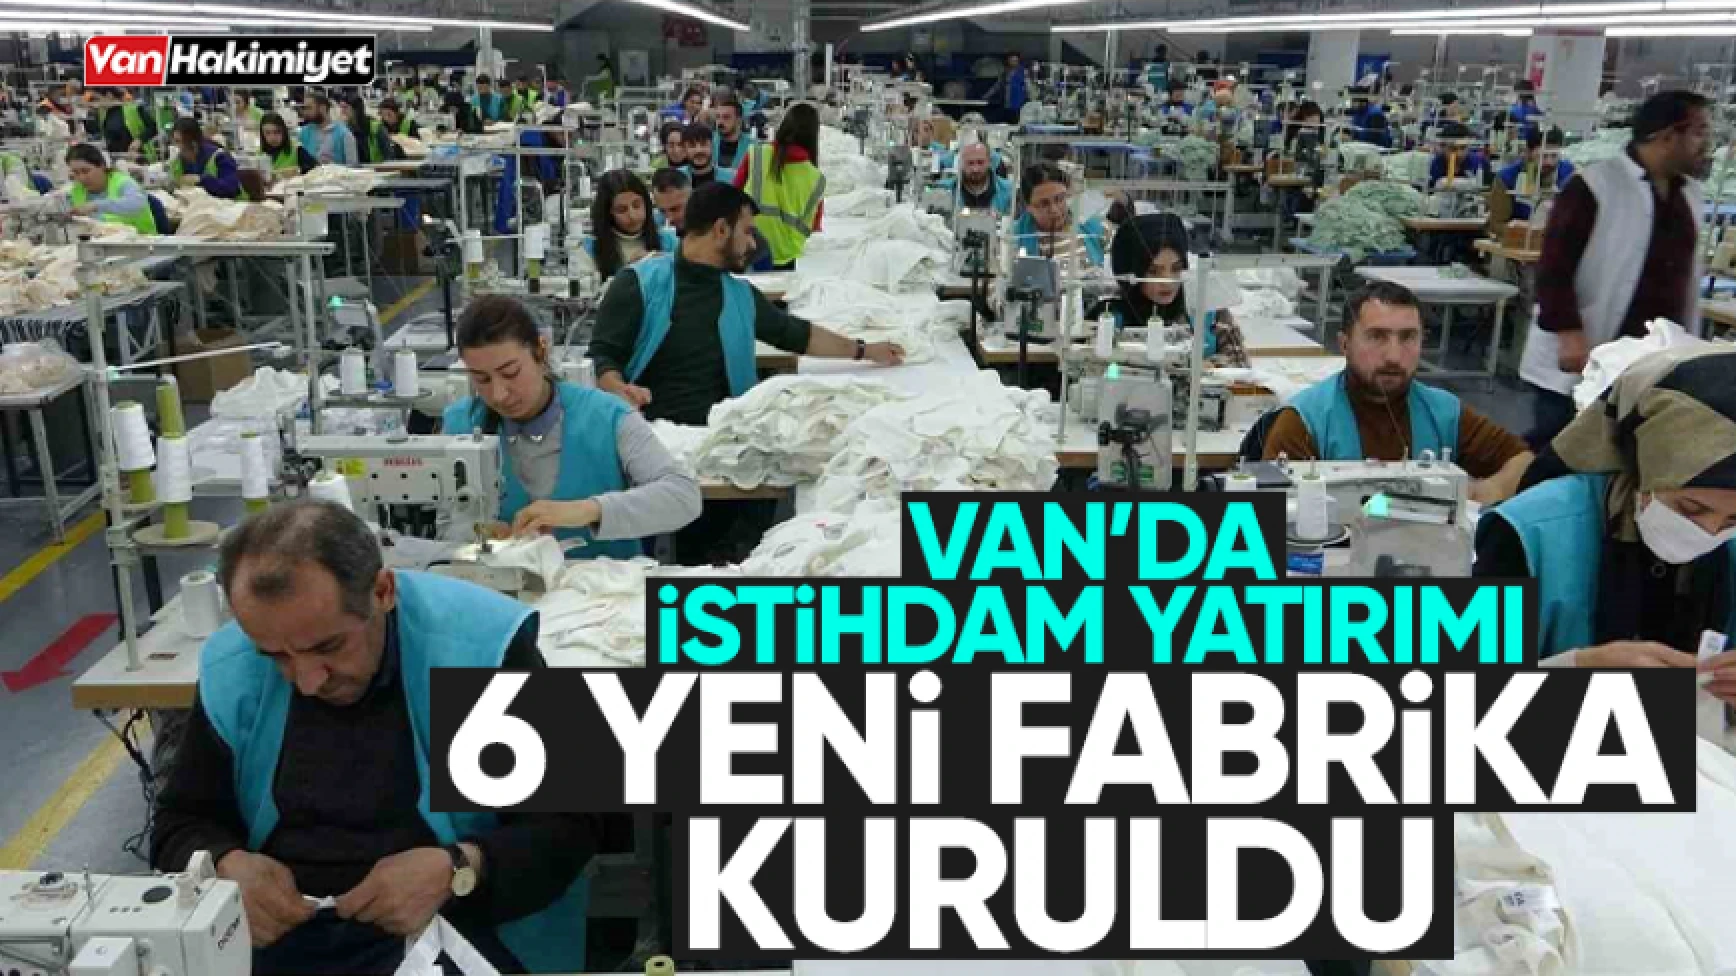 Van’da 6 yeni tekstil fabrikası kuruldu! 2 bin 750 kişi çalışacak